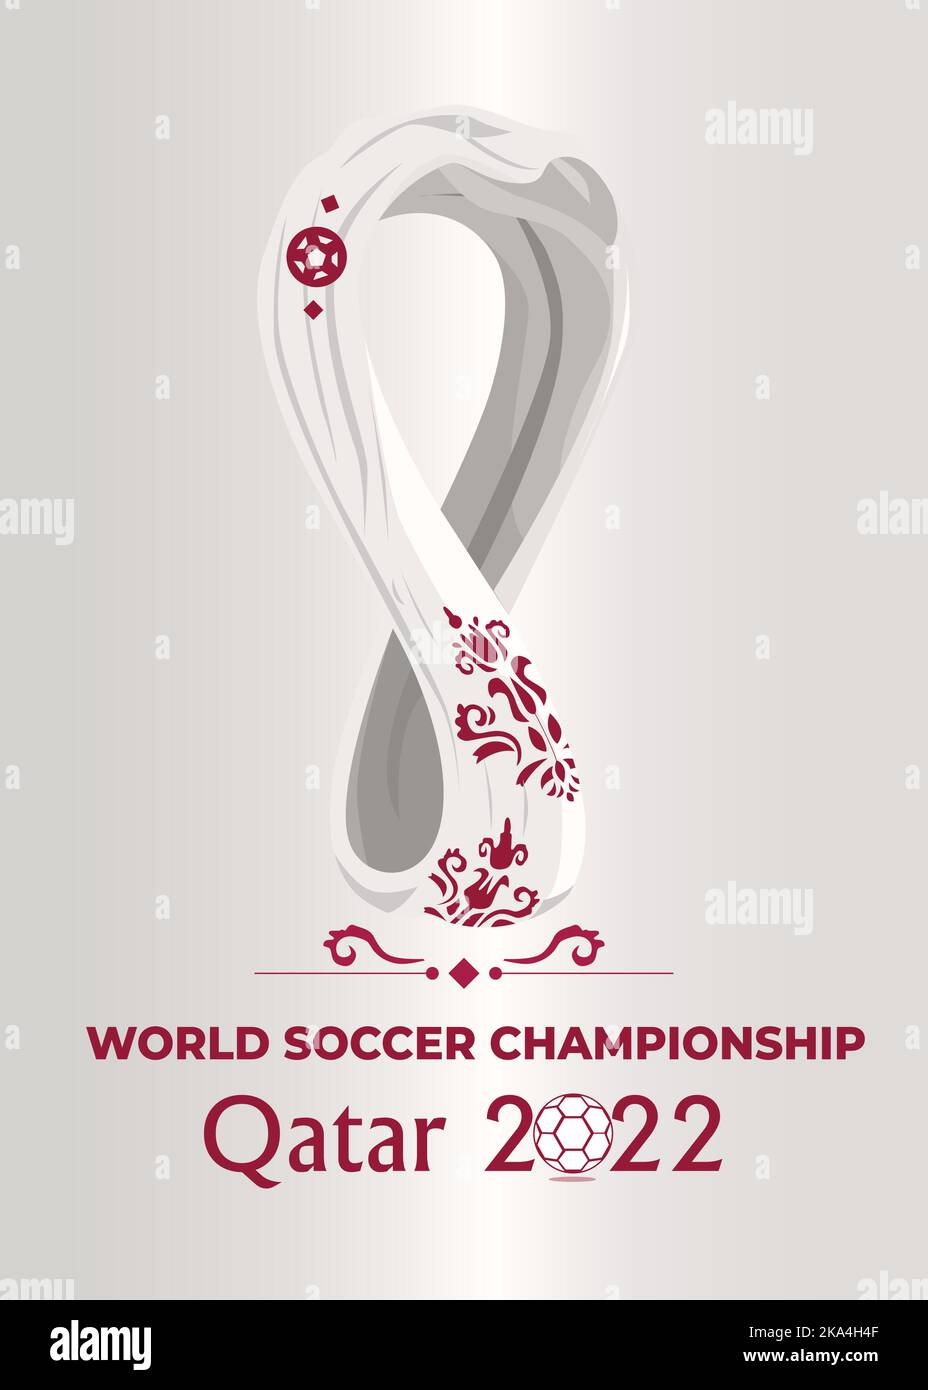 Vector logo World Cup 2022 với thiết kế hoàn toàn mới, hiện đại và tối giản sẽ khiến bạn phải say mê ngay từ cái nhìn đầu tiên. Dựa trên nền văn hóa đa dạng của đất nước Qatar, logo mang trong mình sự độc đáo và tinh tế. Hãy khám phá ngay!